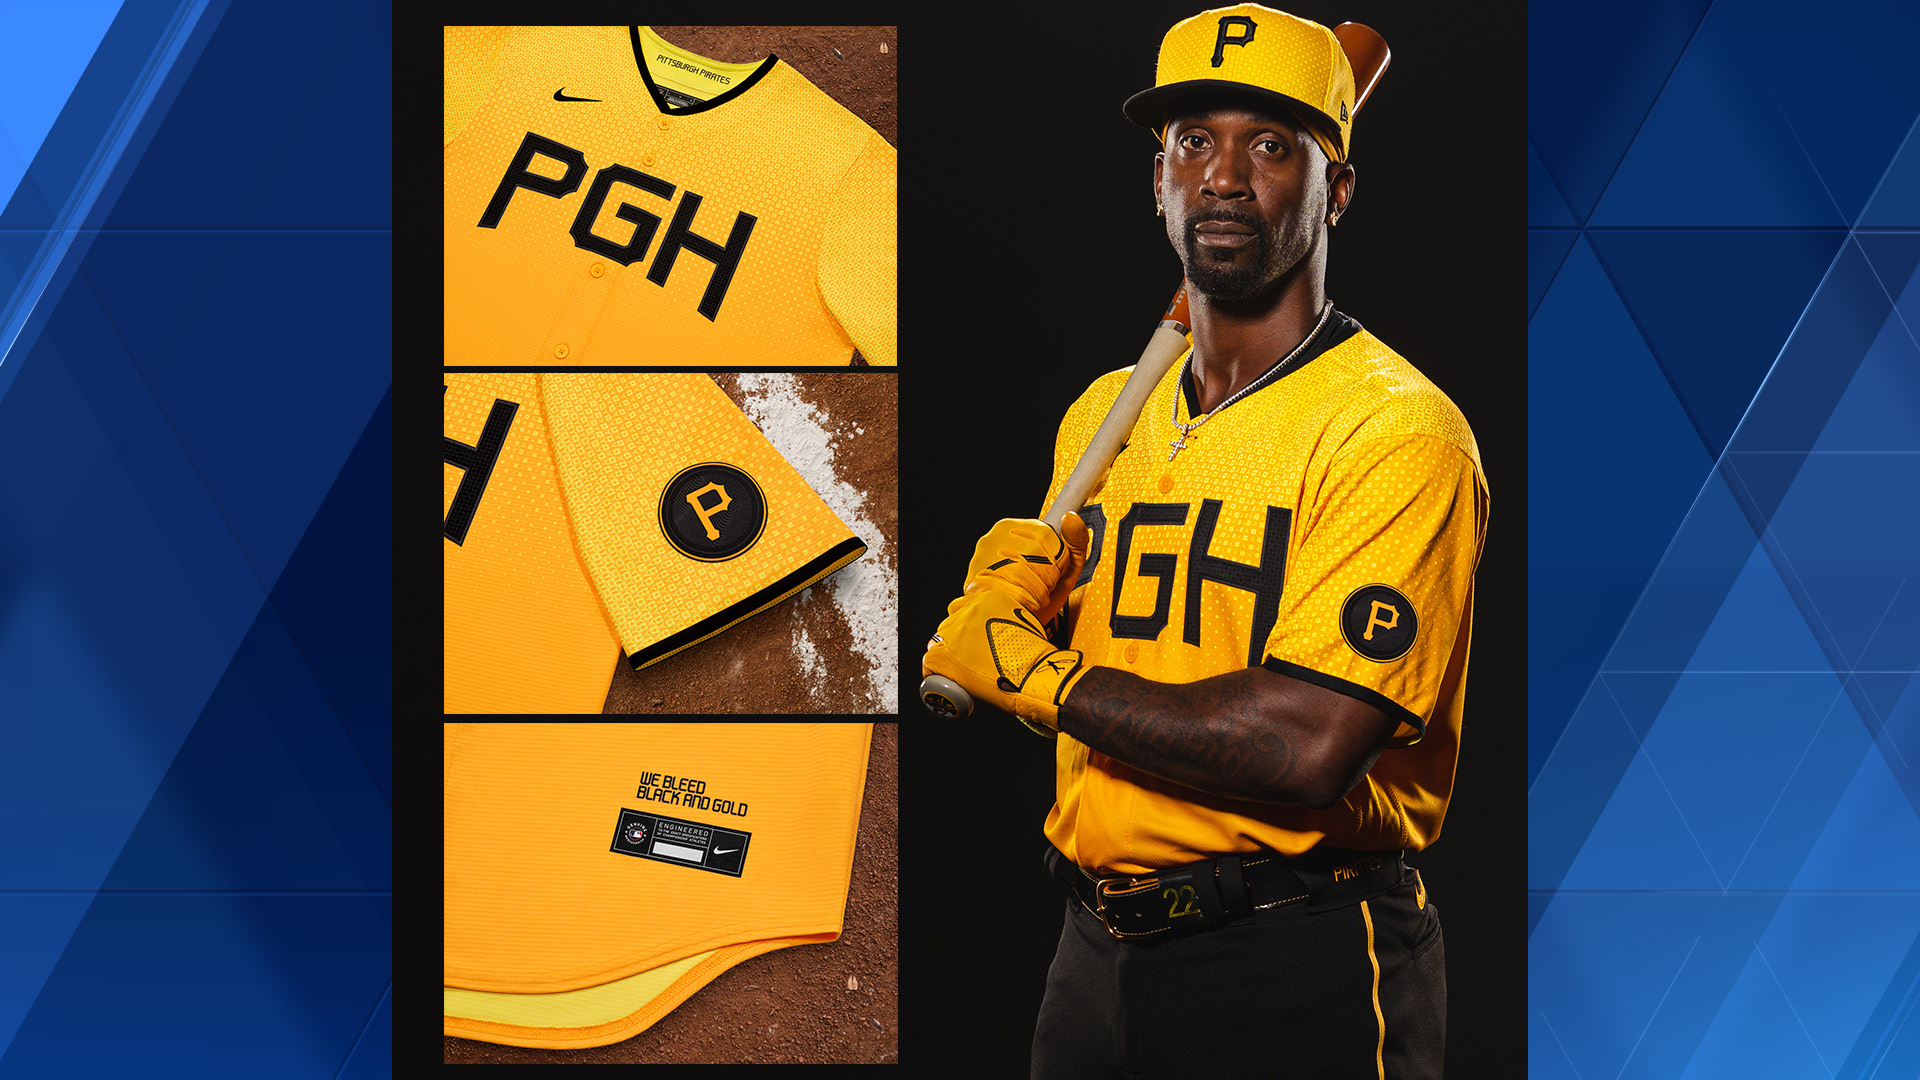 Pirates unveil new City Connect uniforms